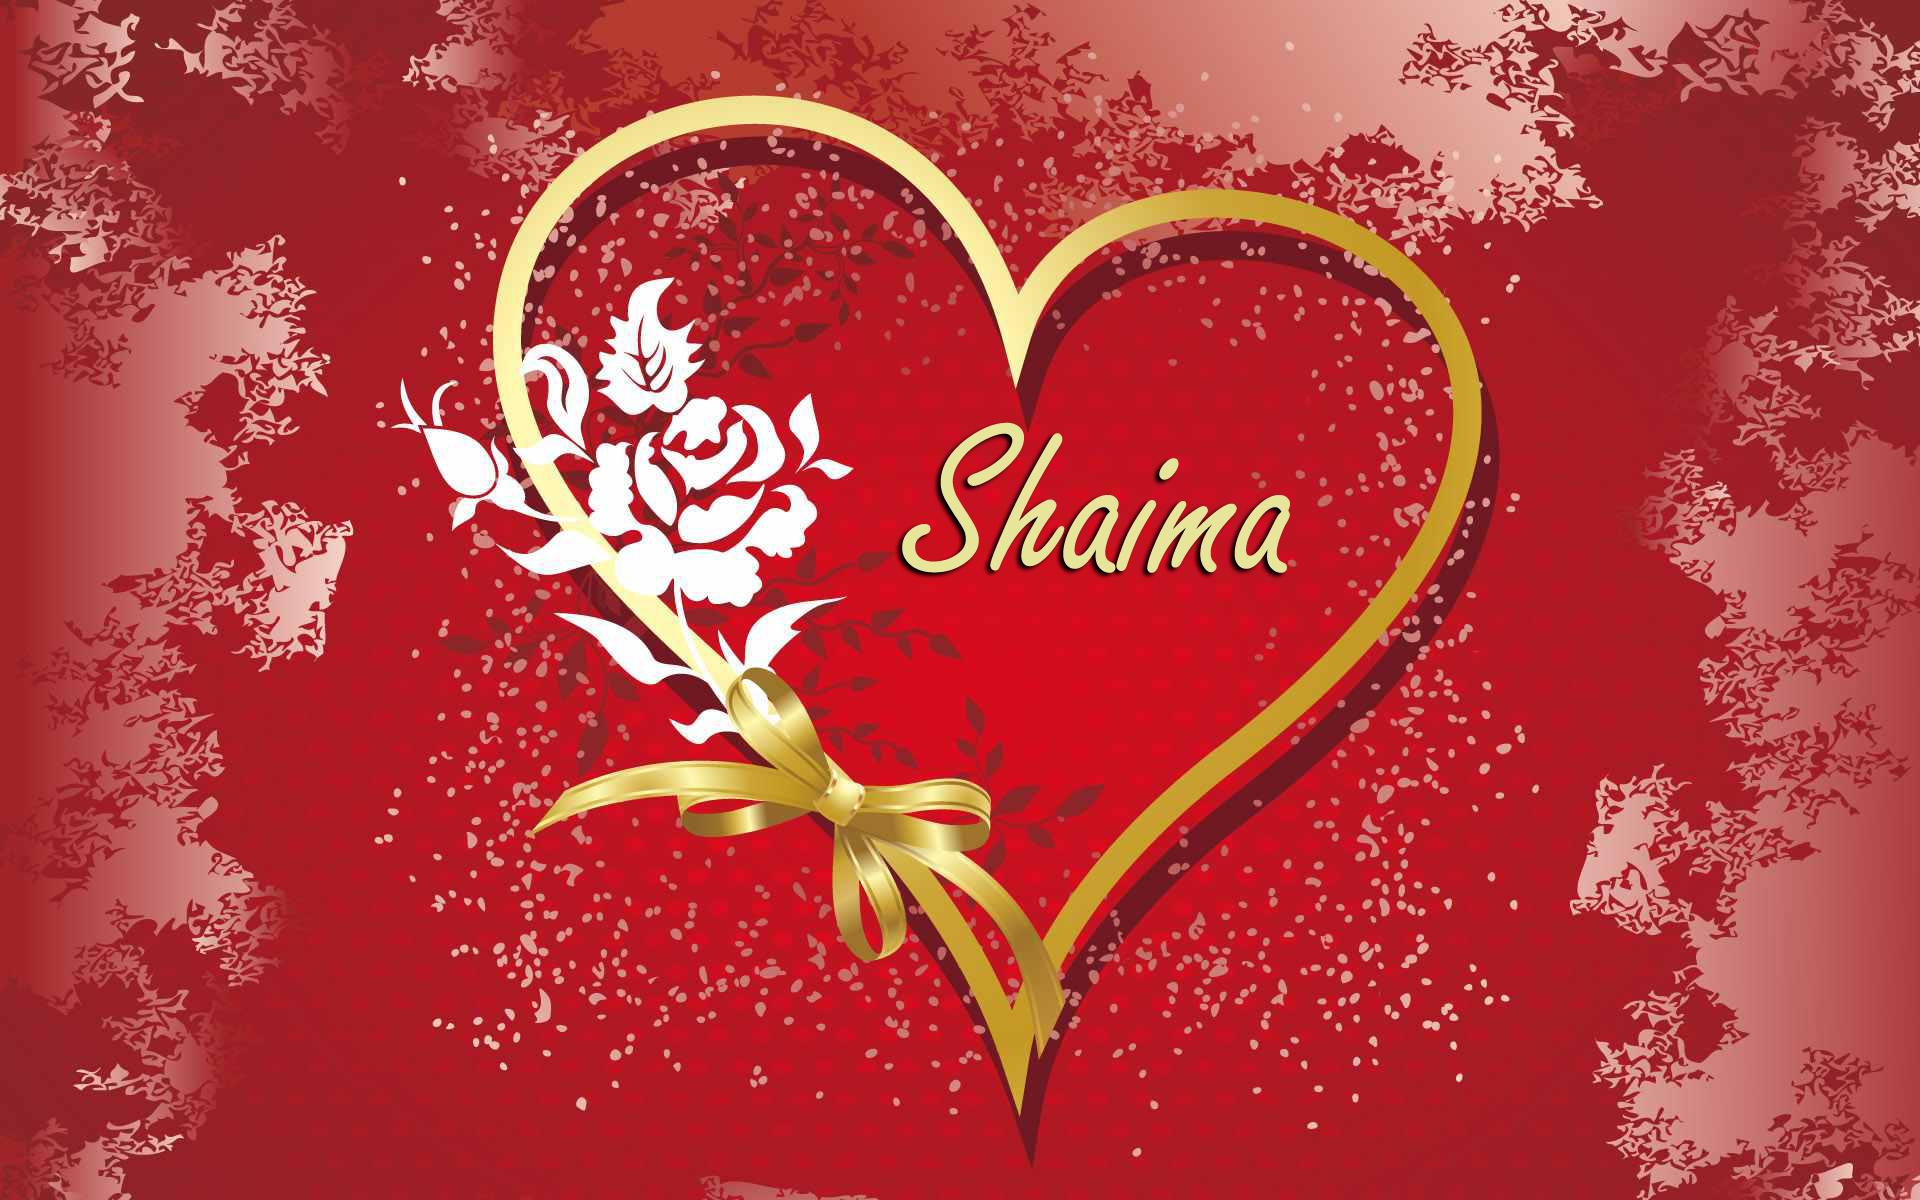 صور رومانسية مكتوب عليها اسم شيماء 2015 , صور خلفيات اسم شيماء 2015